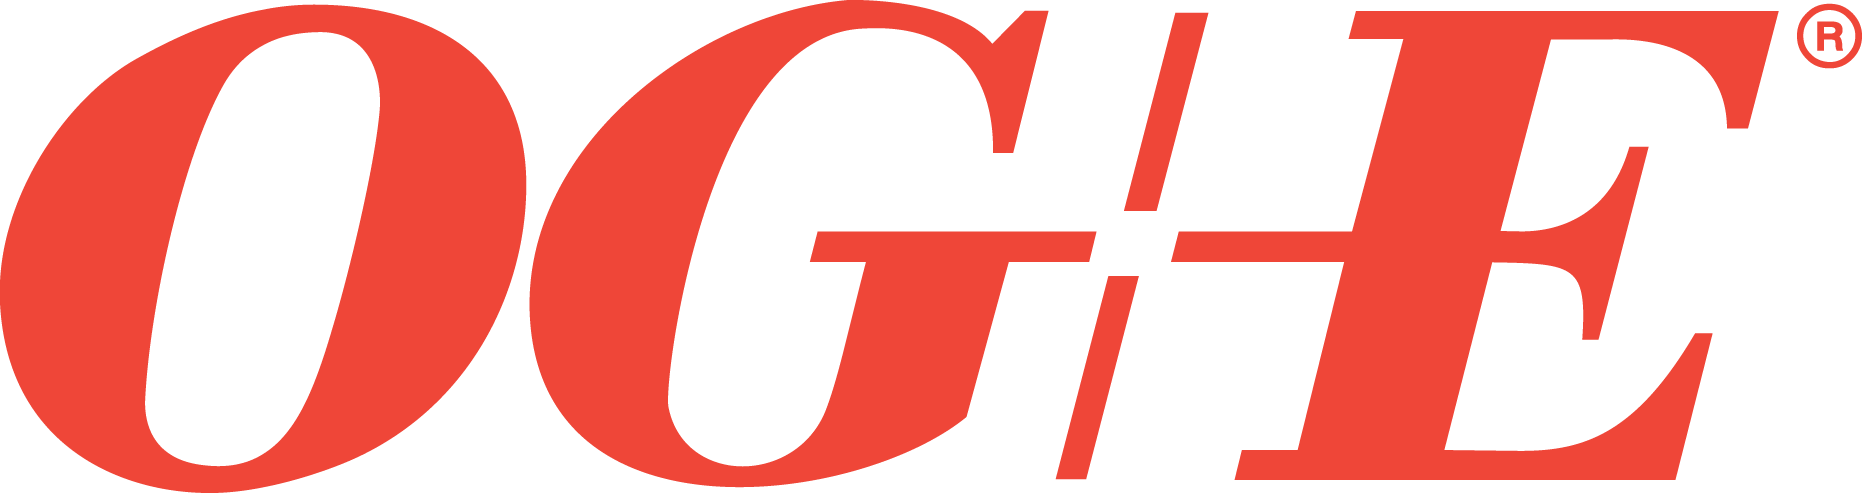 OGE Energy Corp. Foundation, Inc. logo